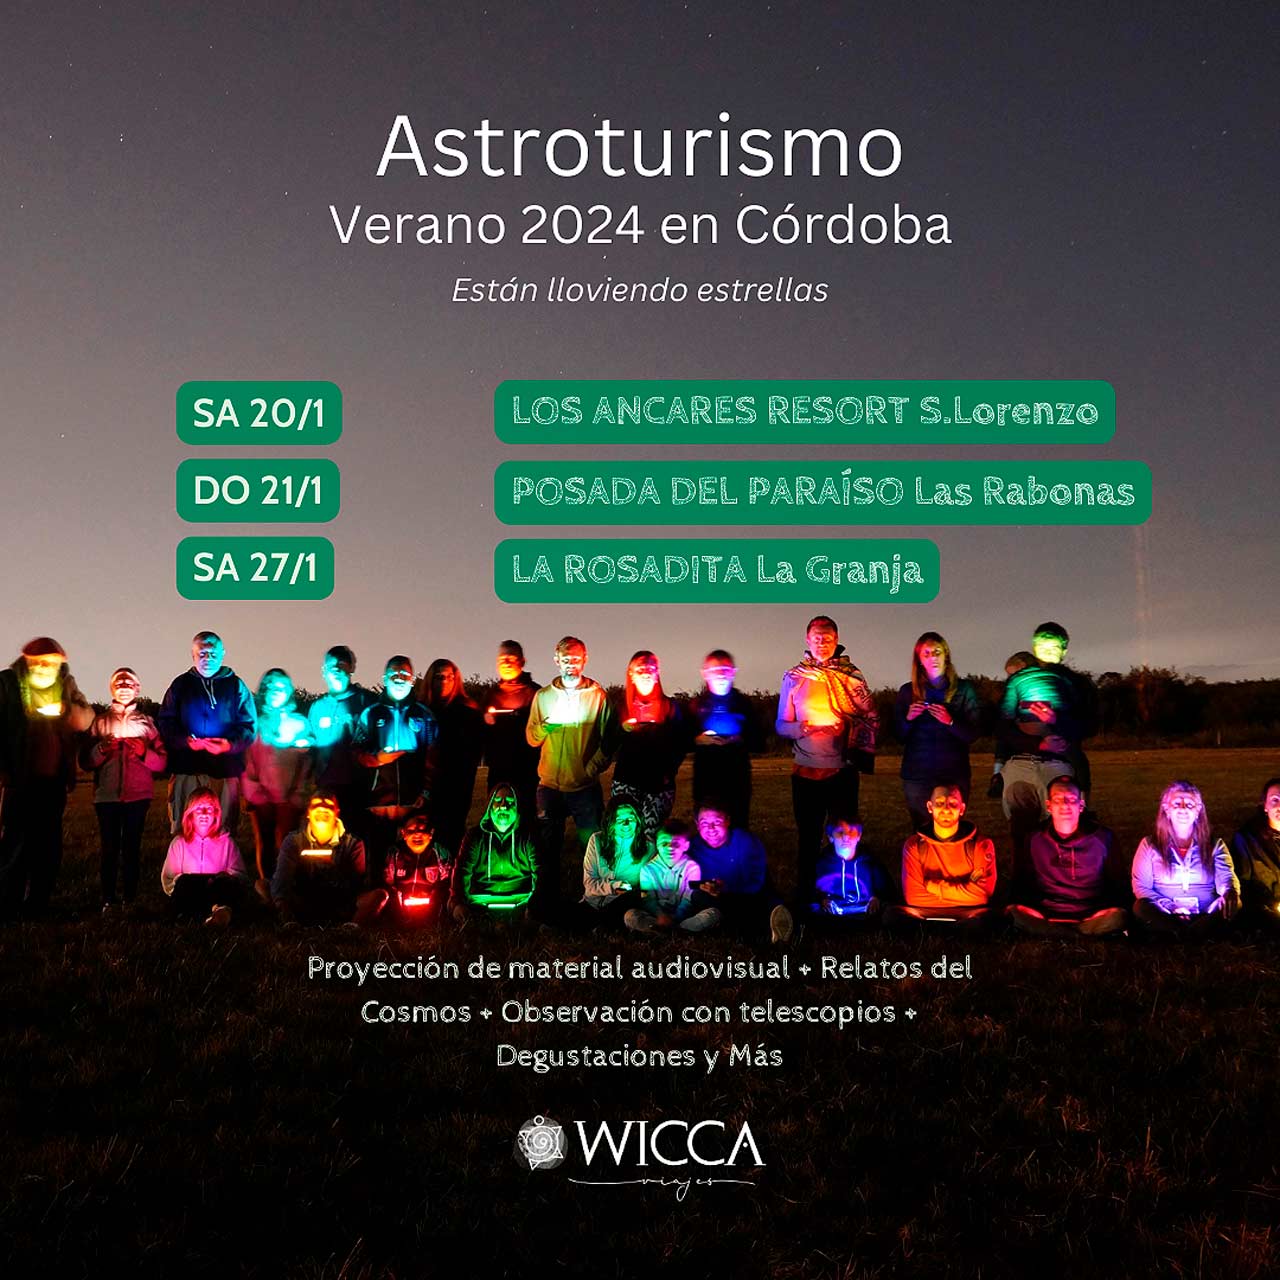 Astroturismo Verano 2024 en Córdoba. Están lloviendo estrellas!